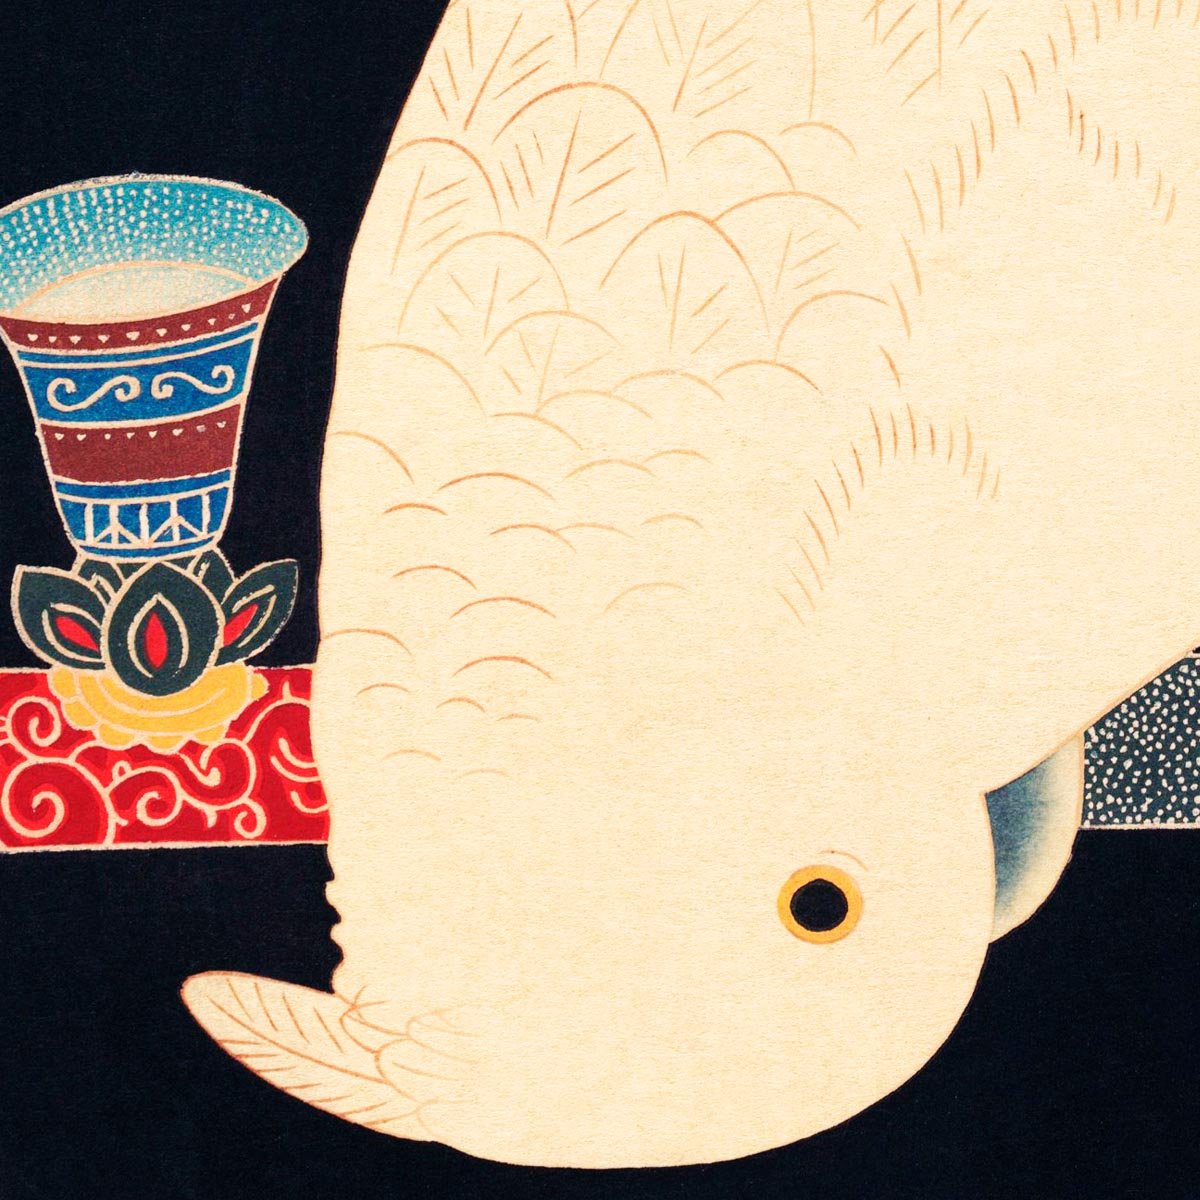 A White Macaw by Ito Jakuchu